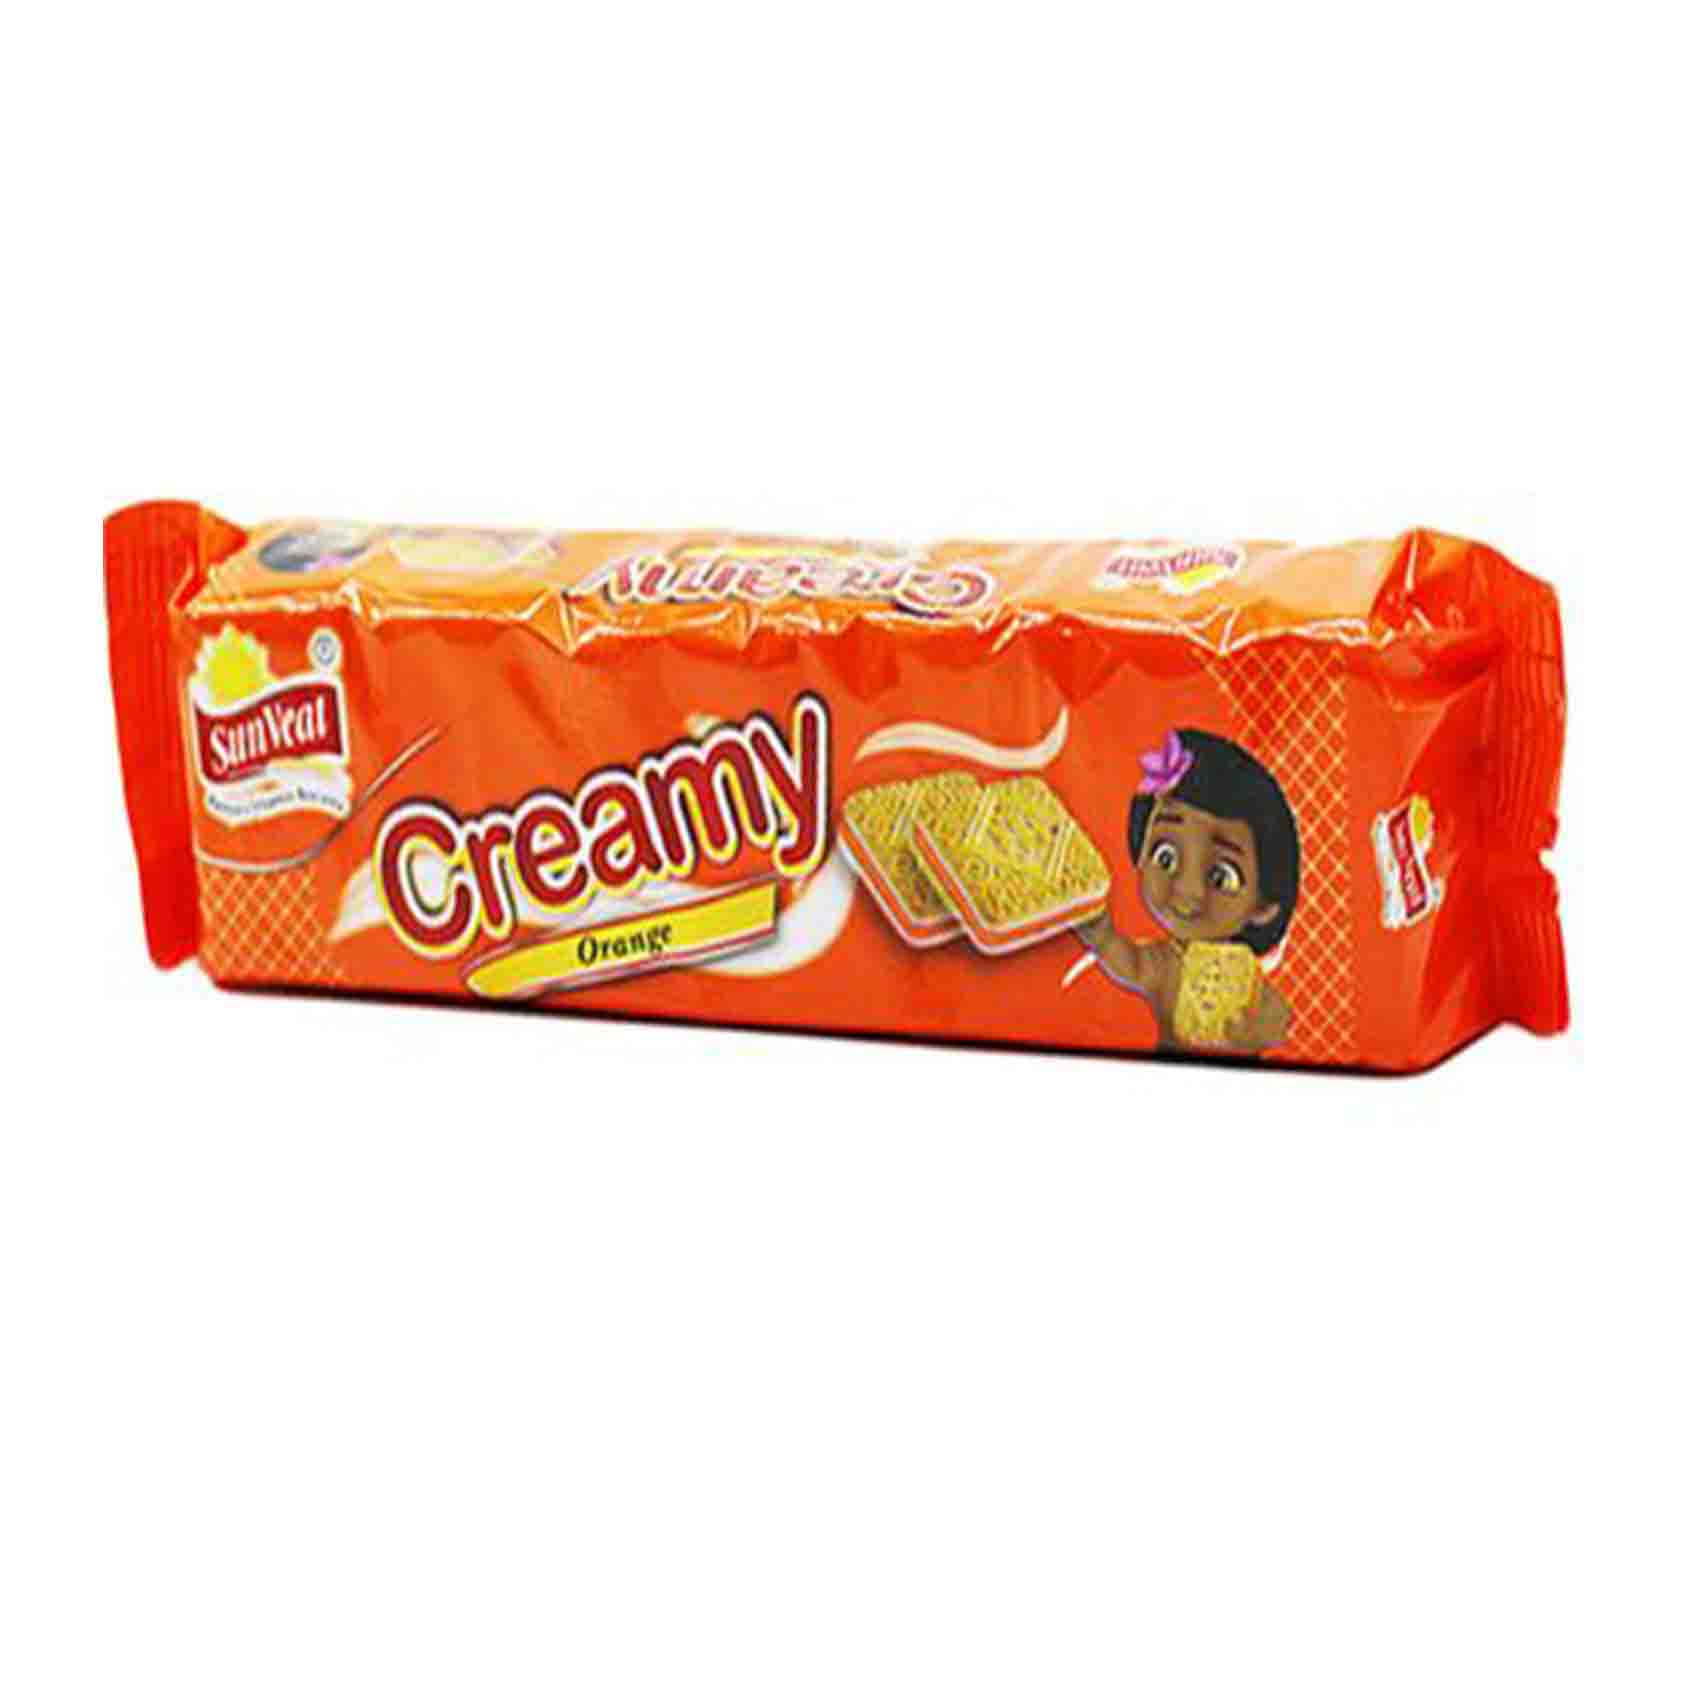 Sunveat Orange Cream Biscuits 100g